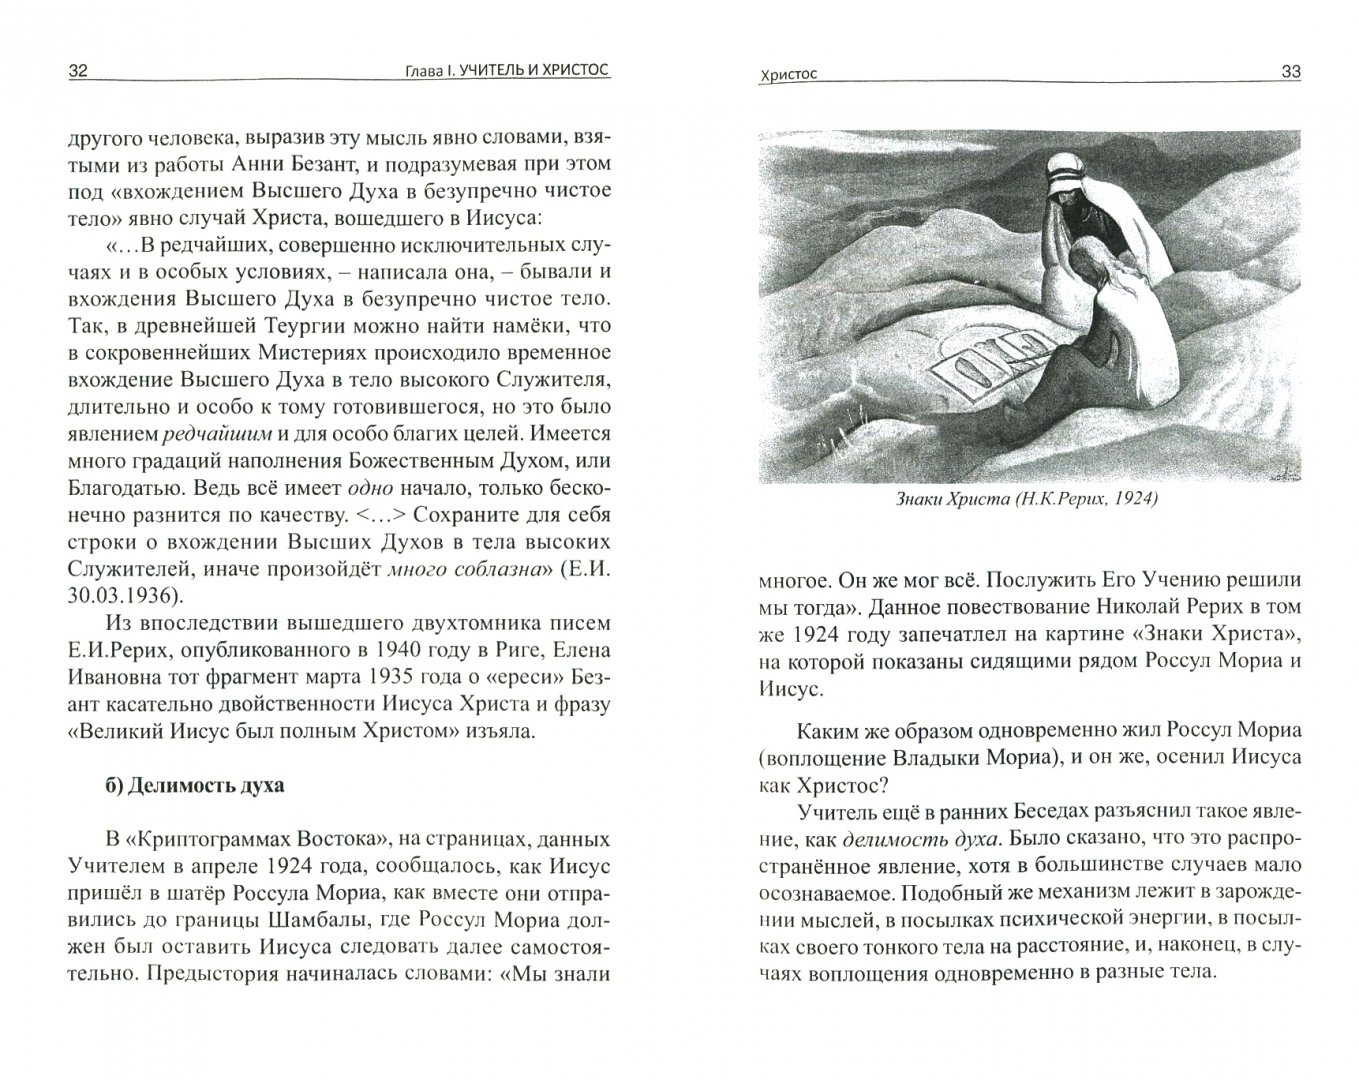 Иллюстрация 1 из 2 для Учитель и Христос - Александр Владимиров | Лабиринт - книги. Источник: Лабиринт